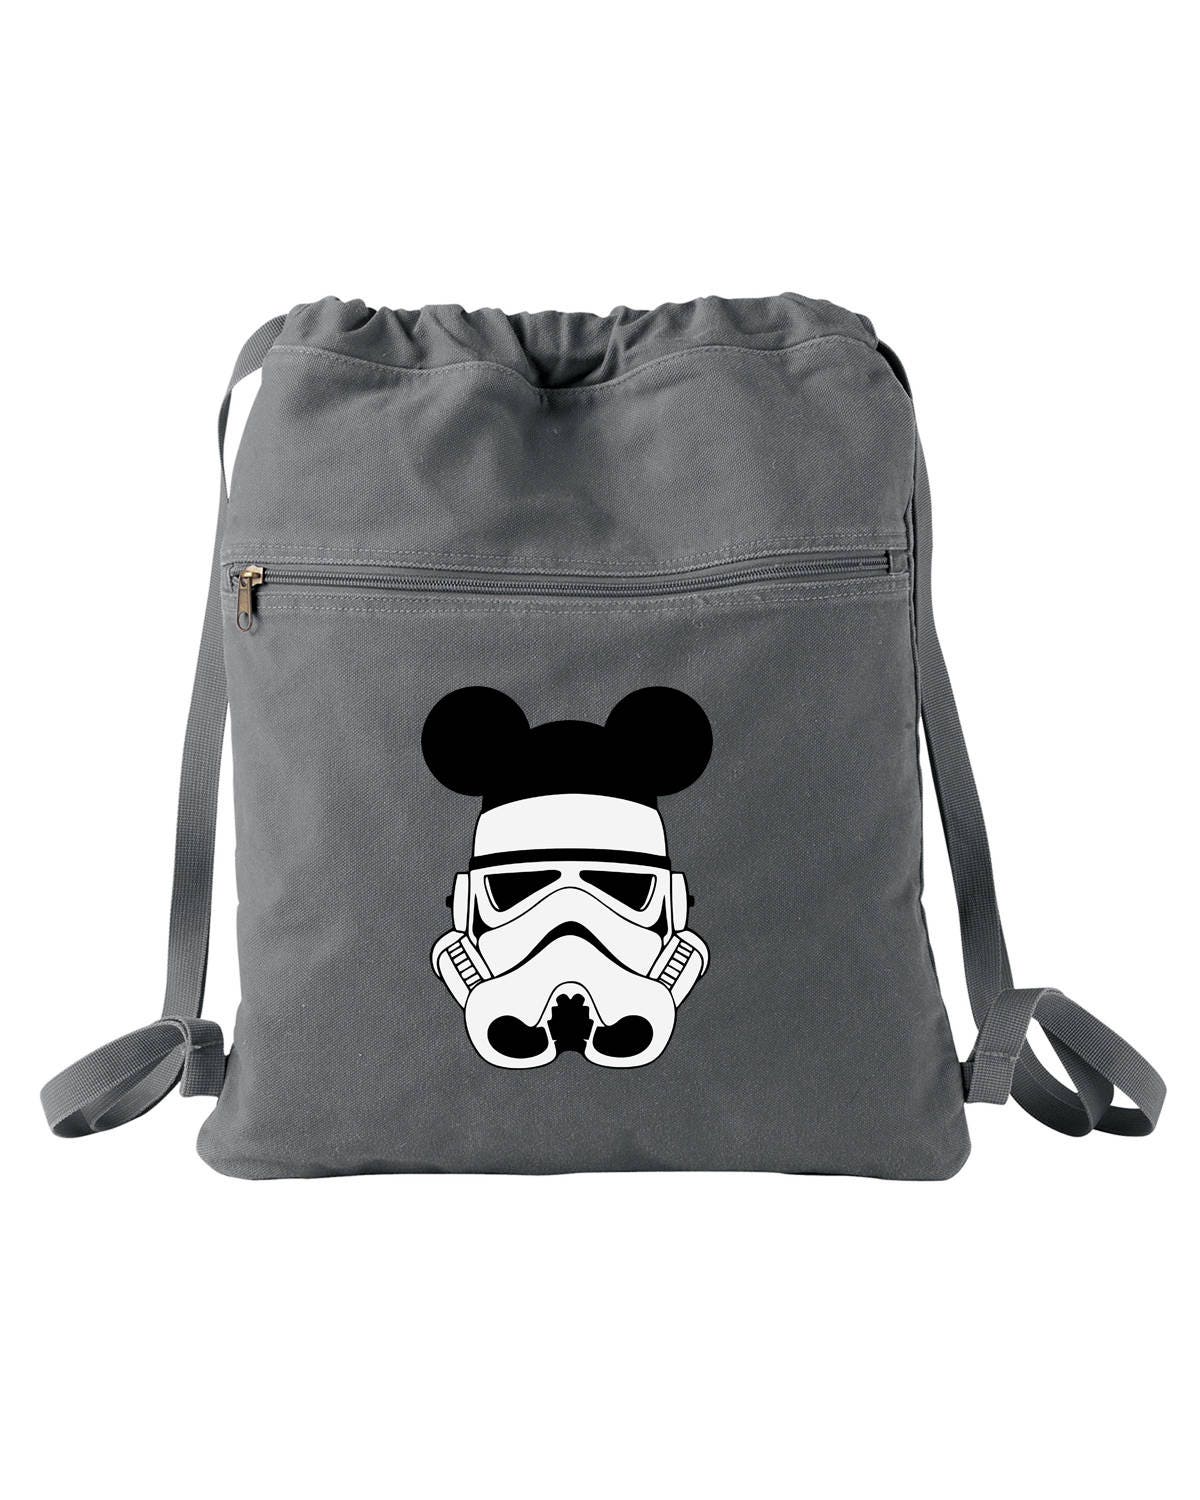 Storm Trooper Star Wars Star Wars Bag Disney Tote | Etsy